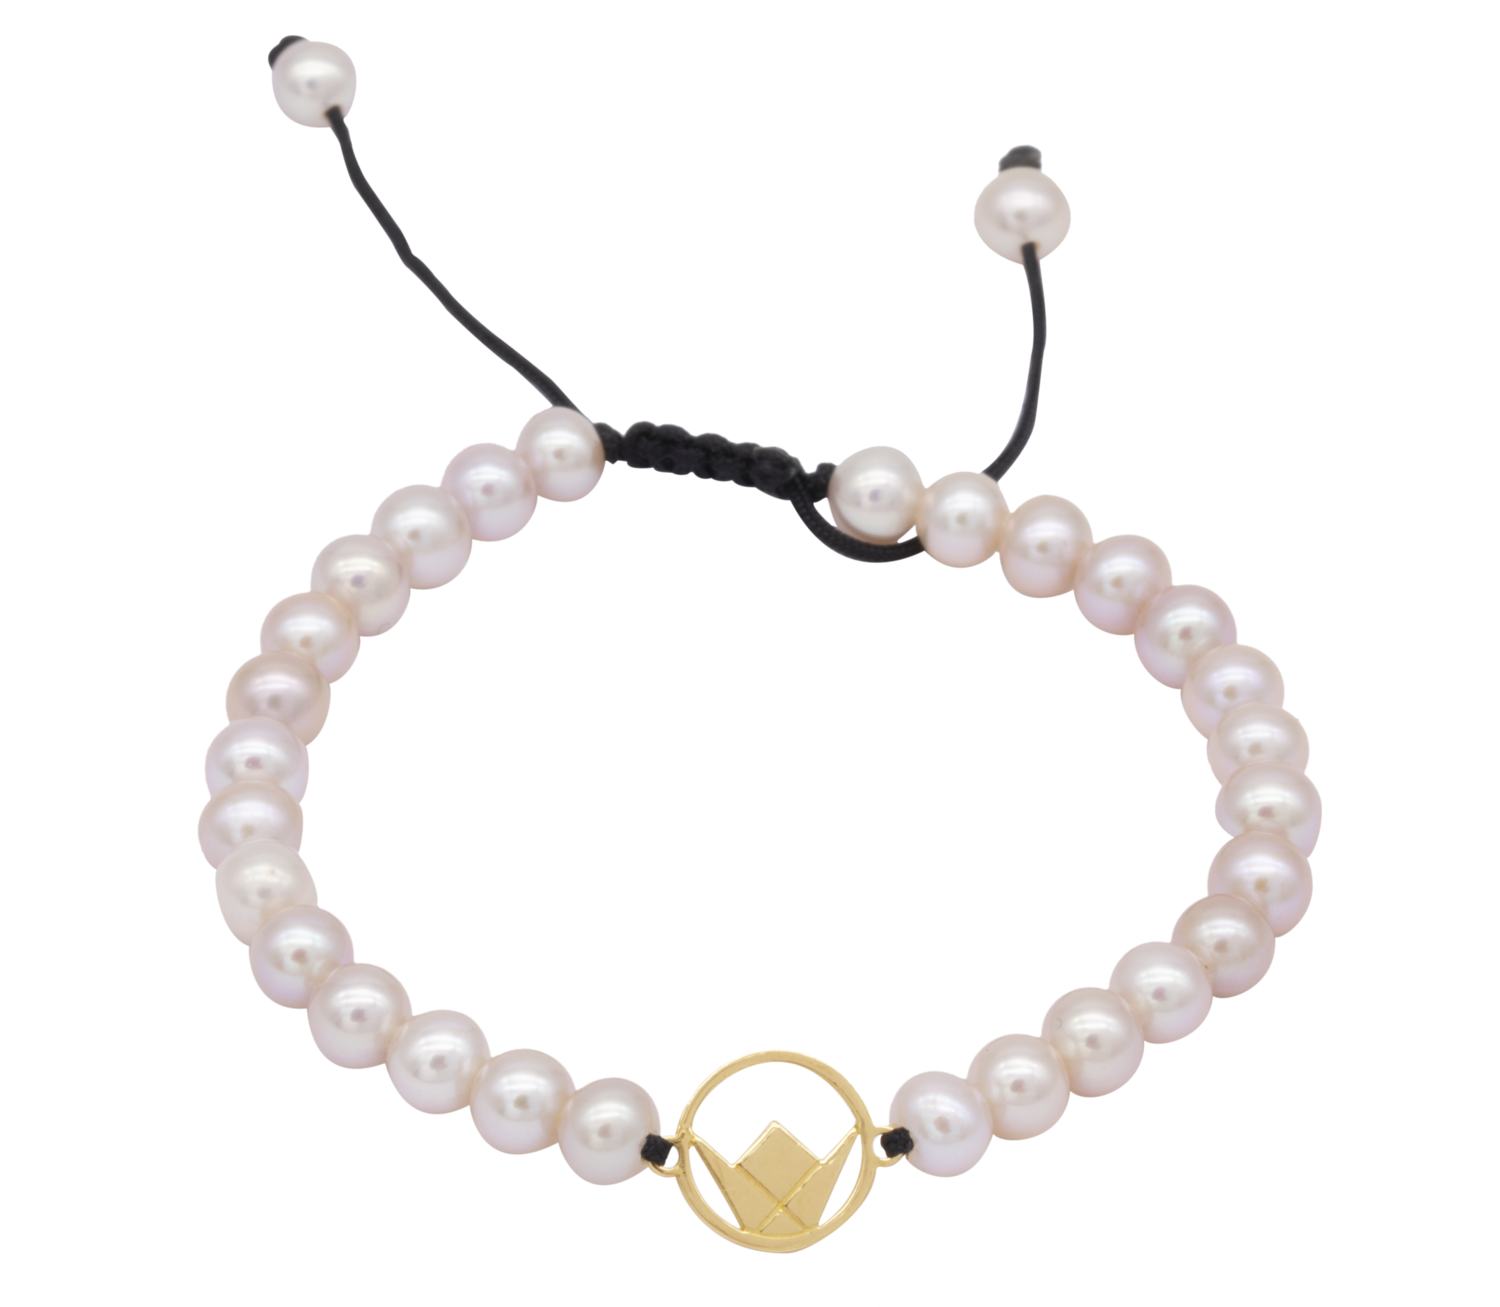 Emblem Gold Bracelet with Pearls